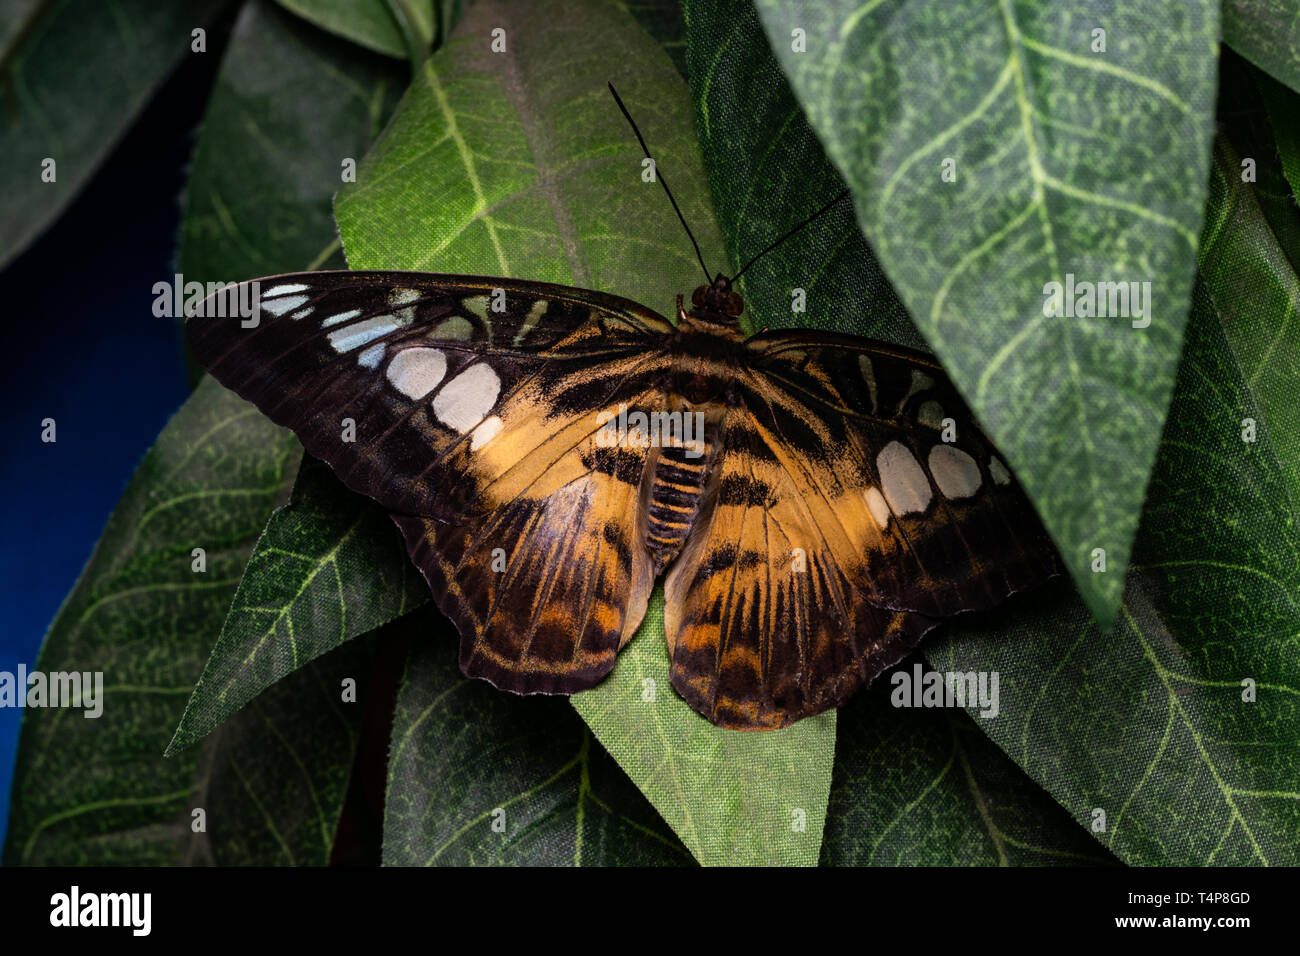 Bellissime farfalle tropicali sulle foglie verdi. La bellezza della natura. Foto Stock